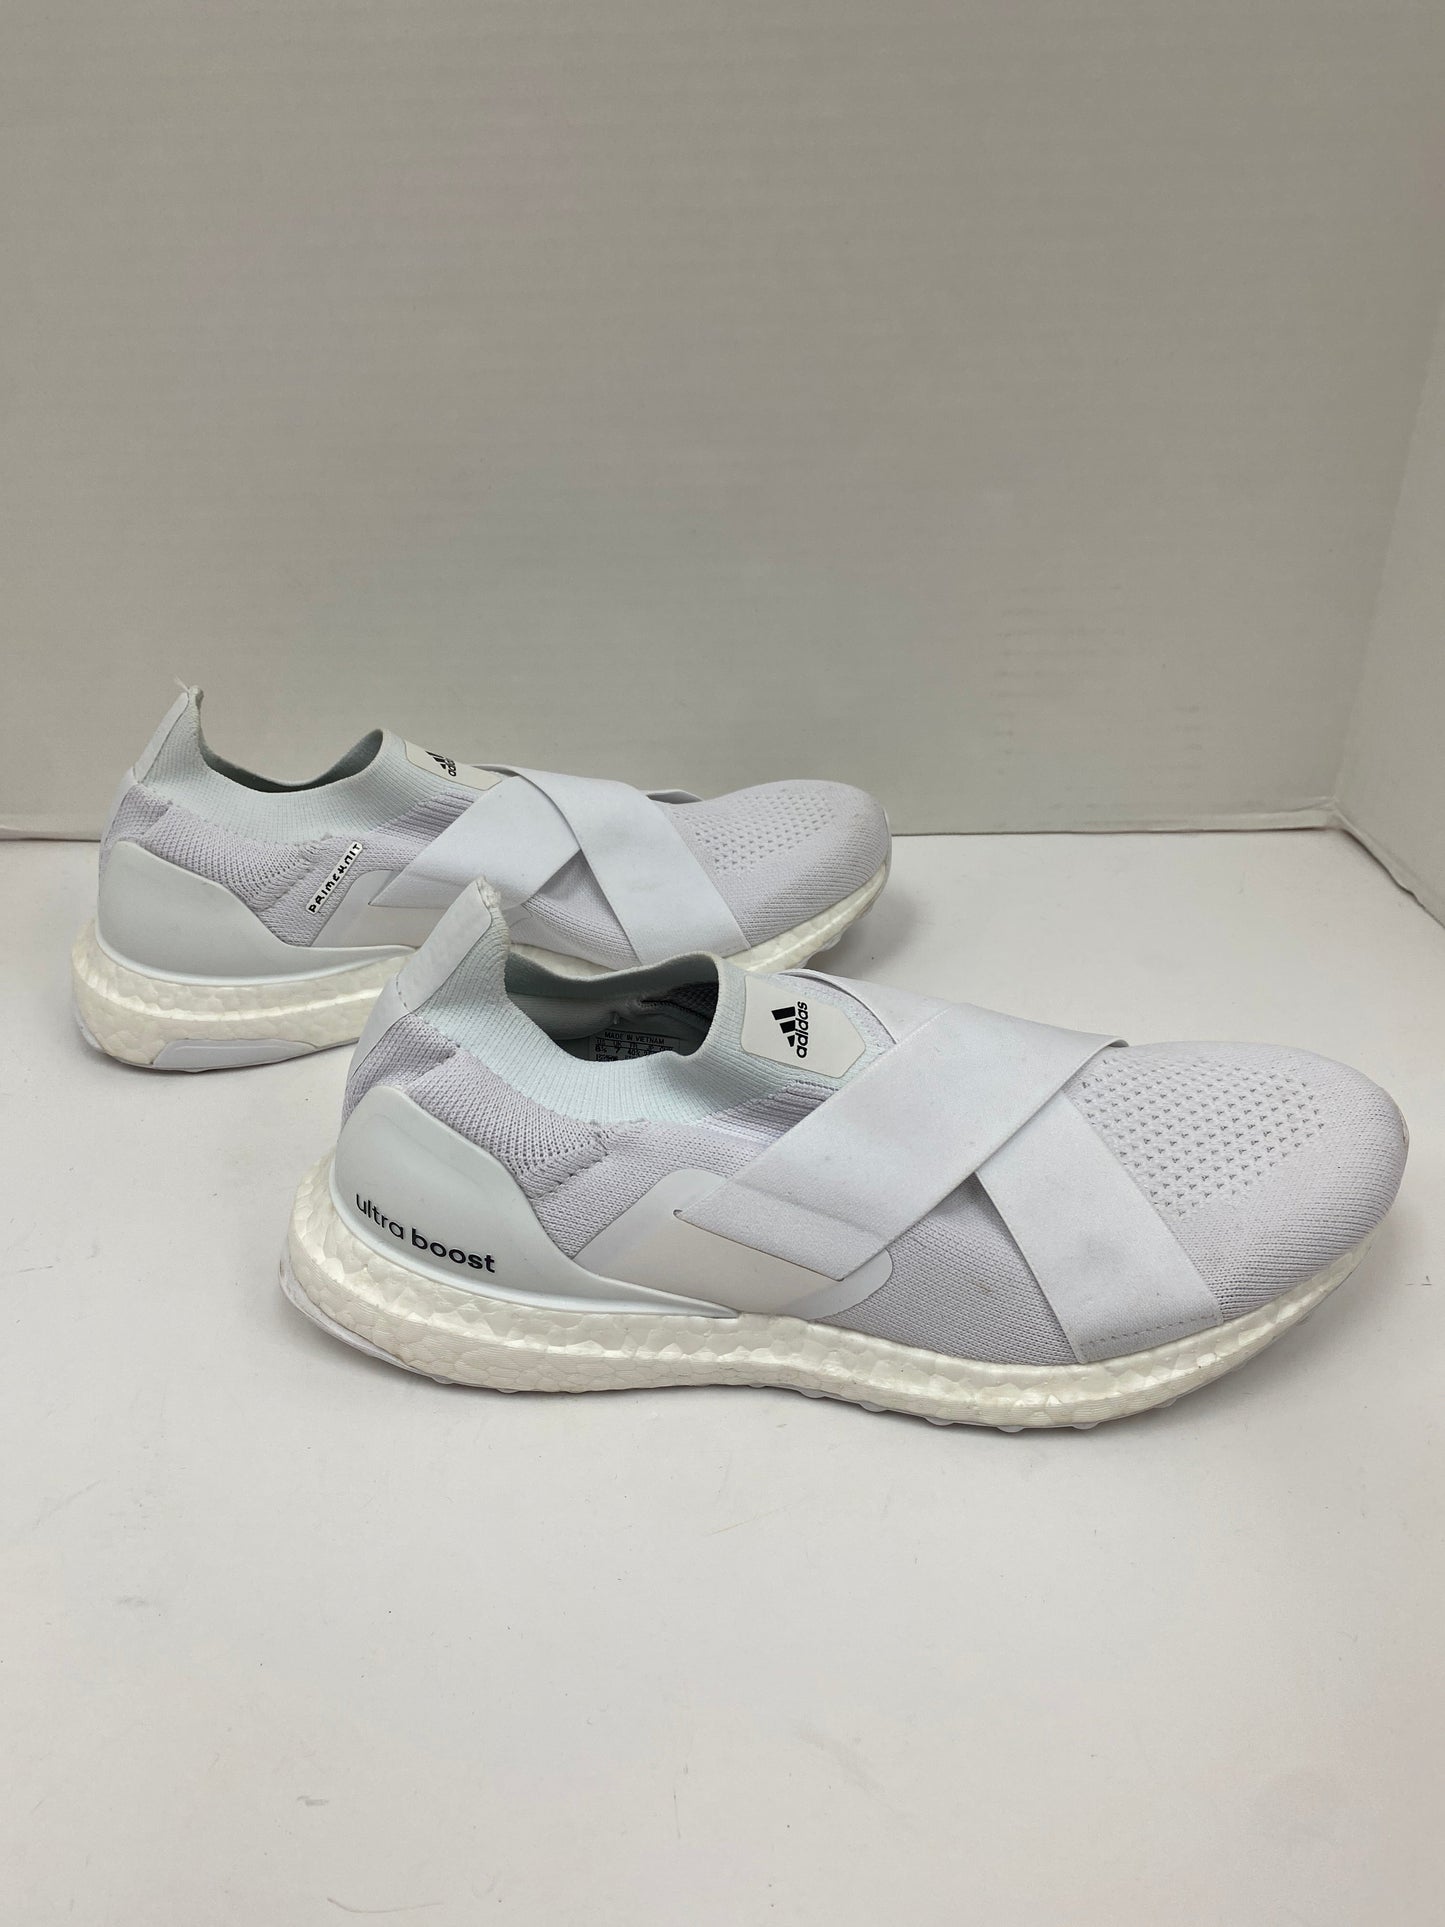 White Shoes Athletic Adidas, Size 8.5